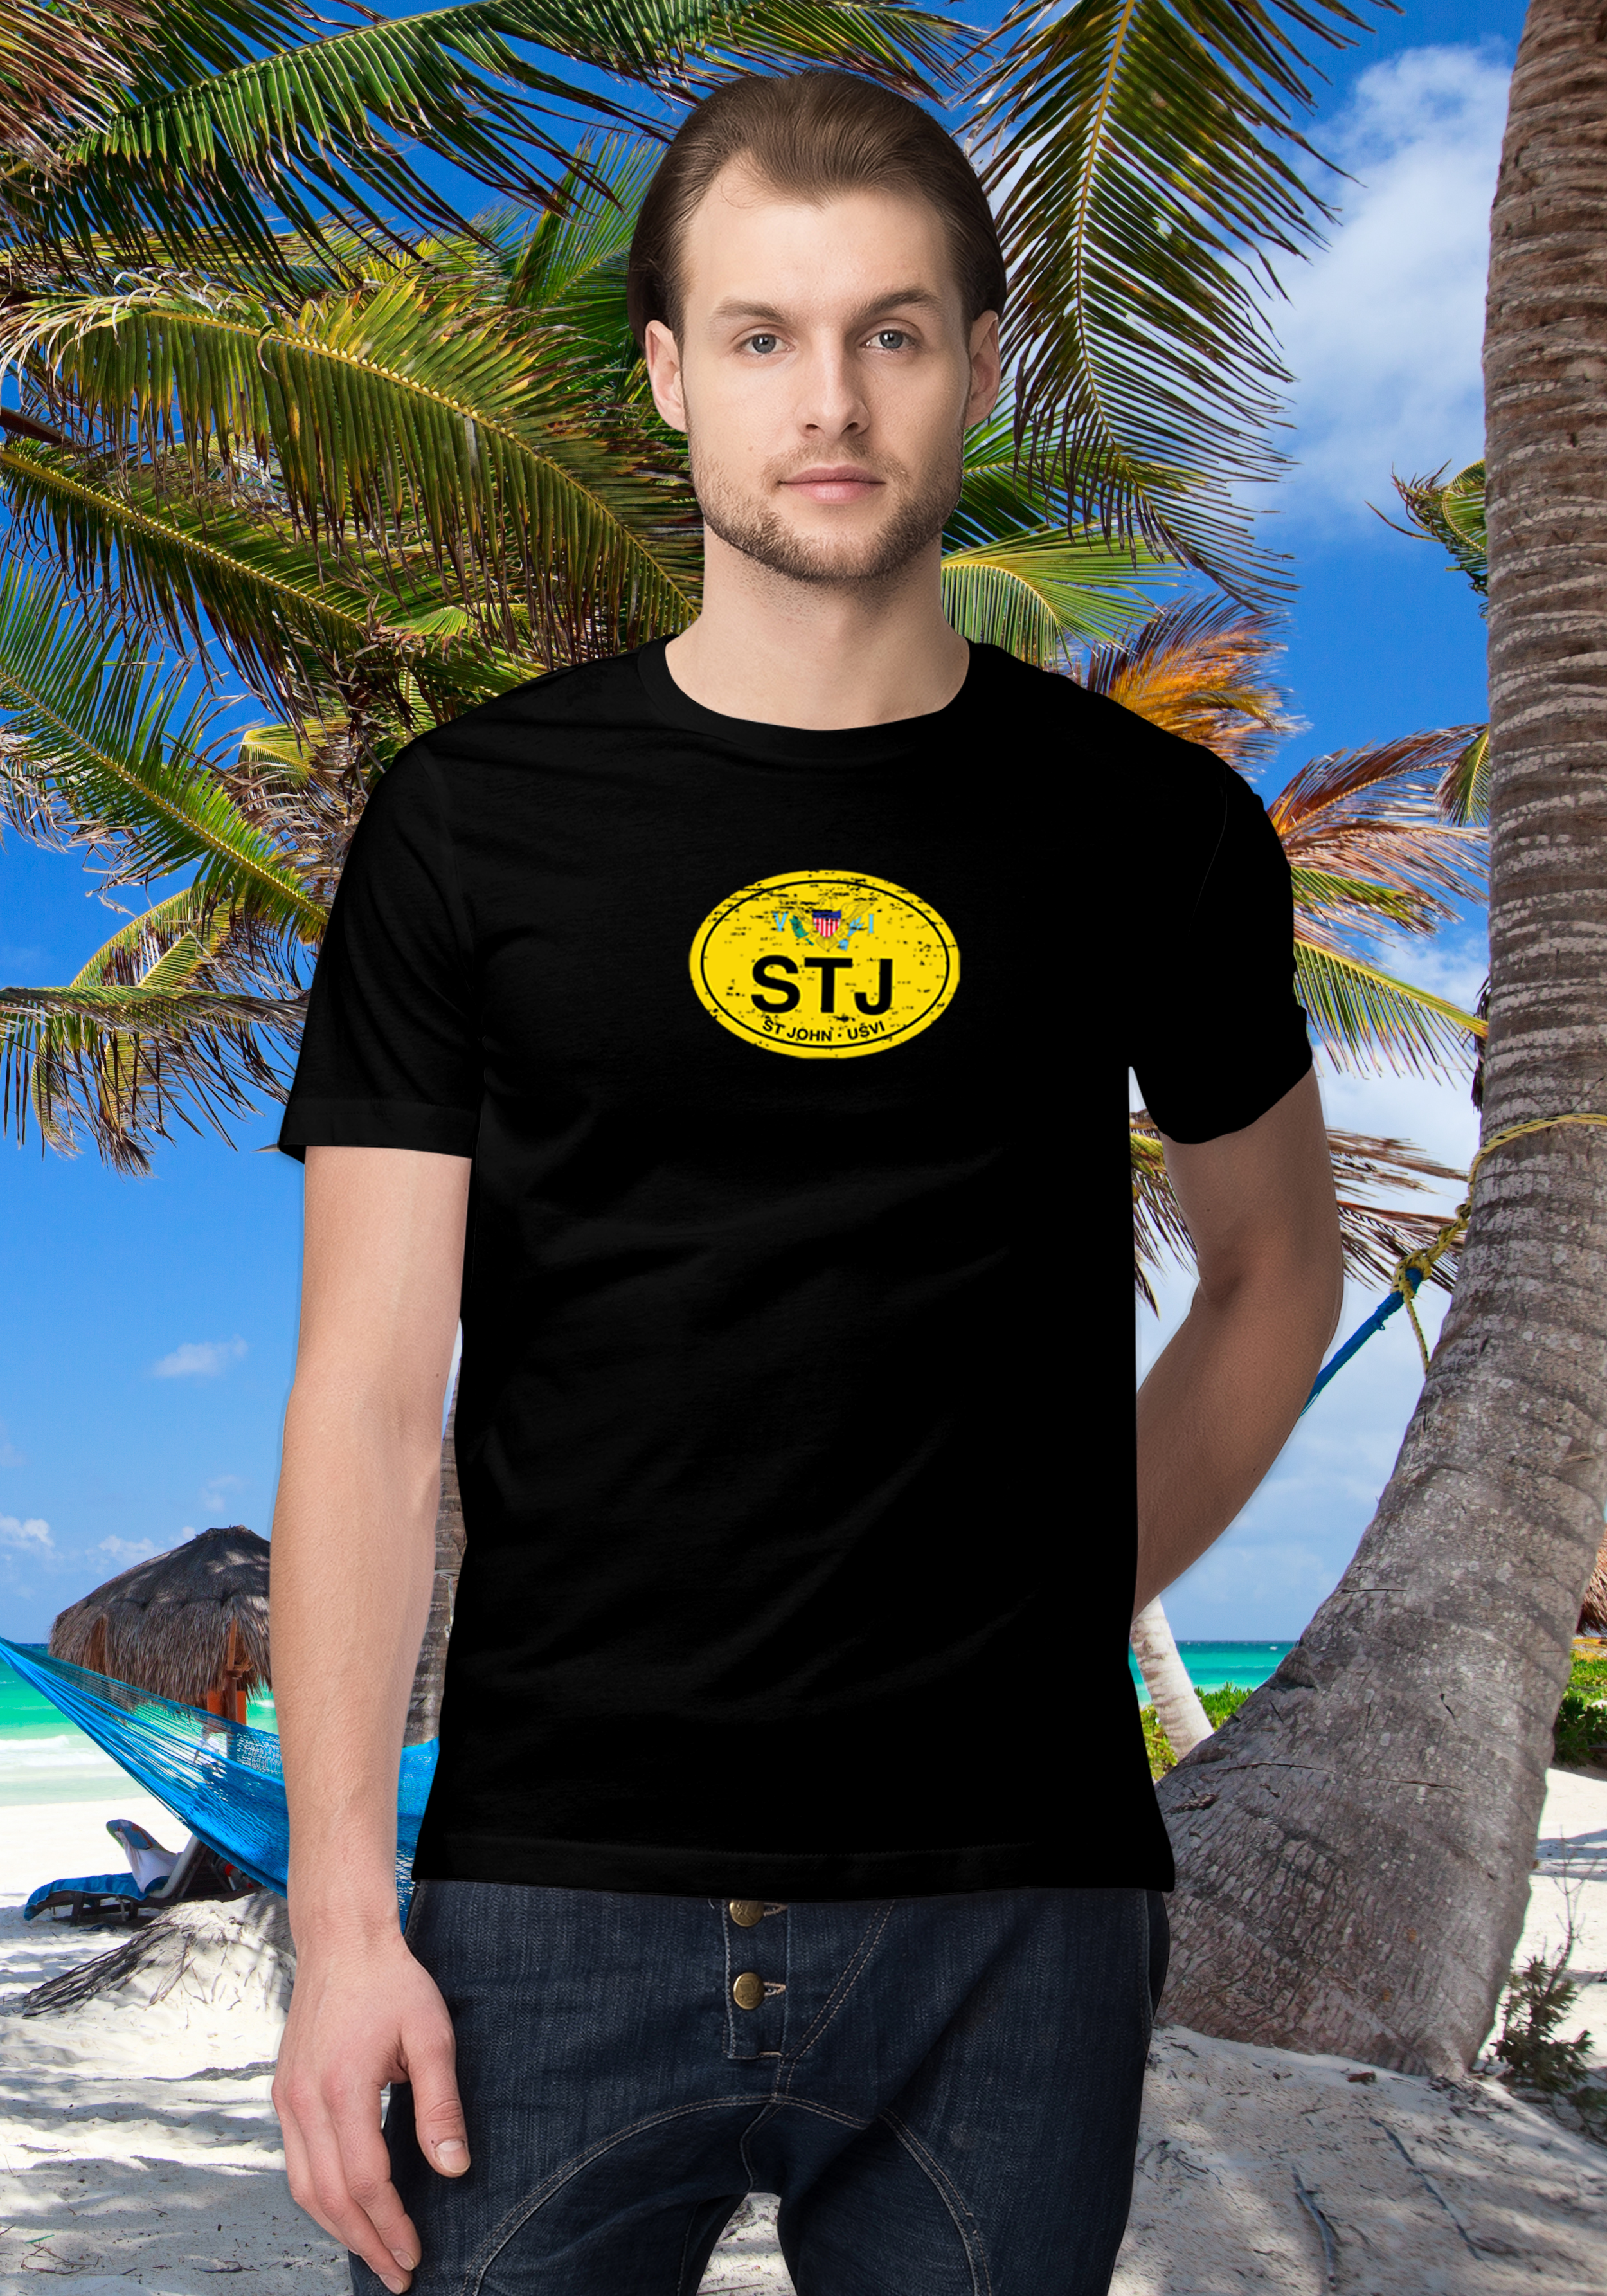 St John Men's Flag T-Shirt Souvenirs - My Destination Location